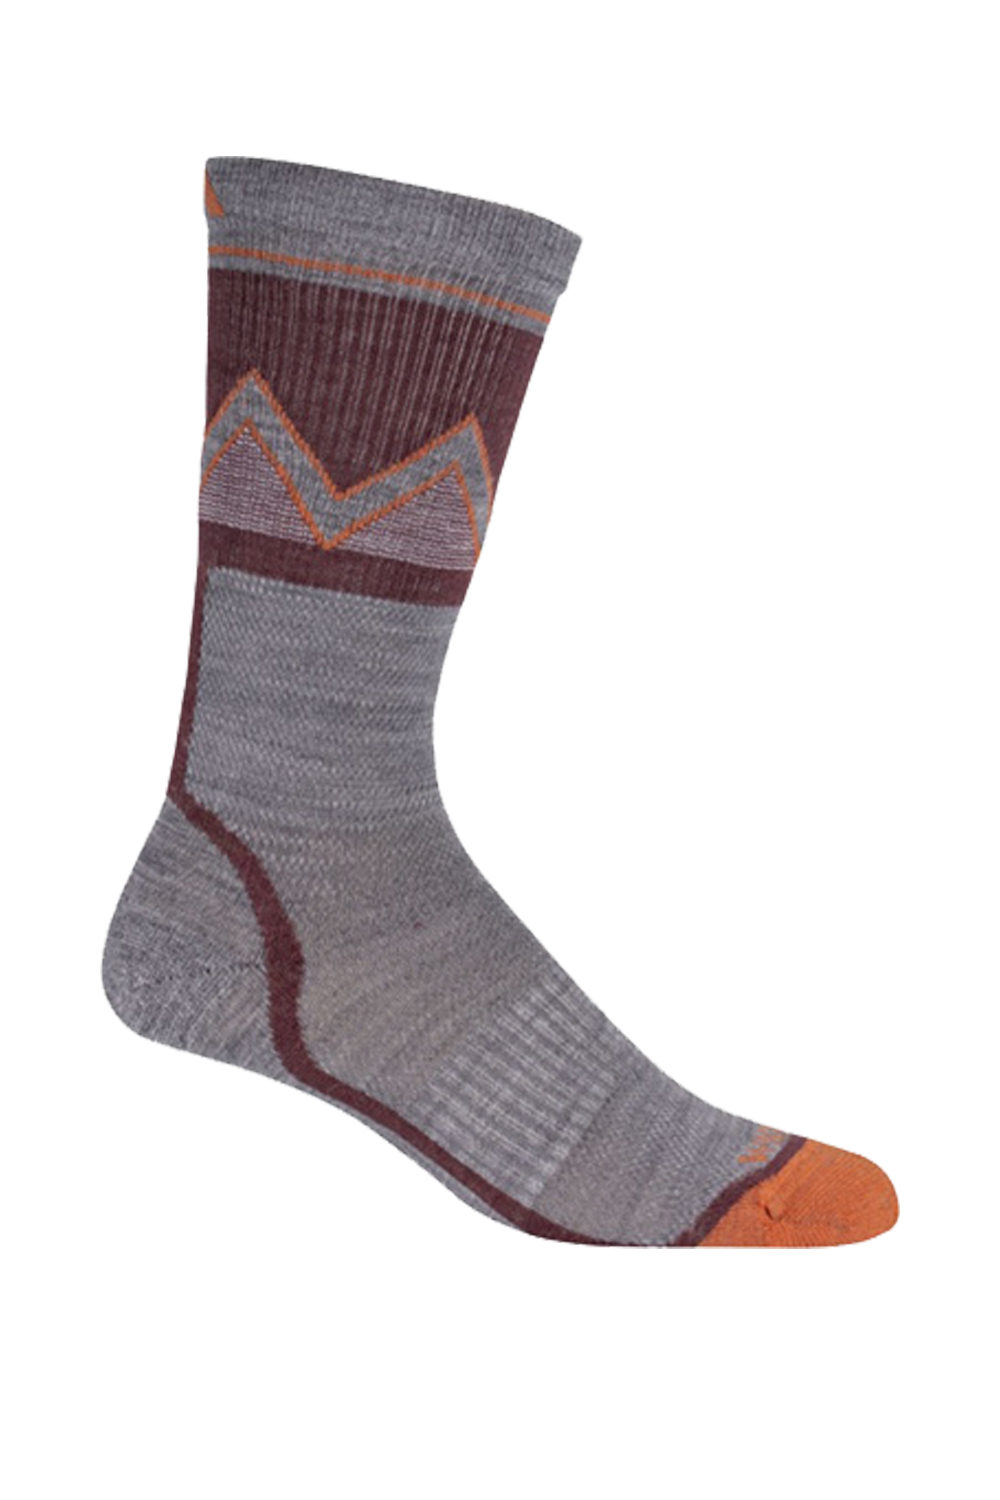 Wigwam Point Reyes Socks